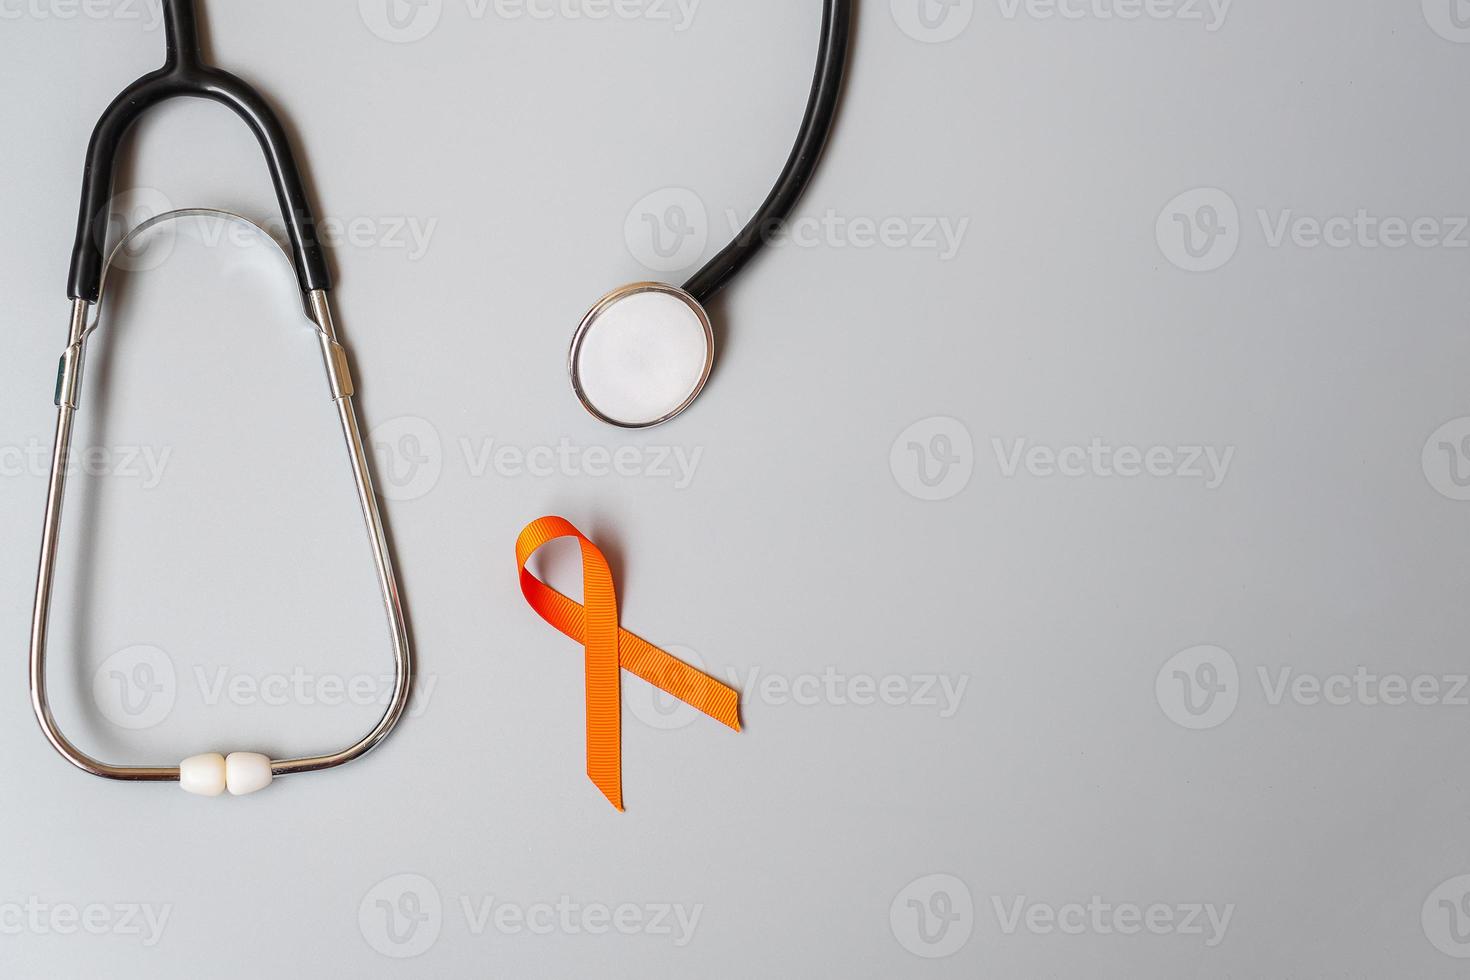 leukemi, njurcancerdagen, multipel skleros i världen, crps, månad för medvetenhet om självskador, orange band med stetoskop för att stödja människor som lever och sjukdomar. hälsovård och världen cancer dag koncept foto